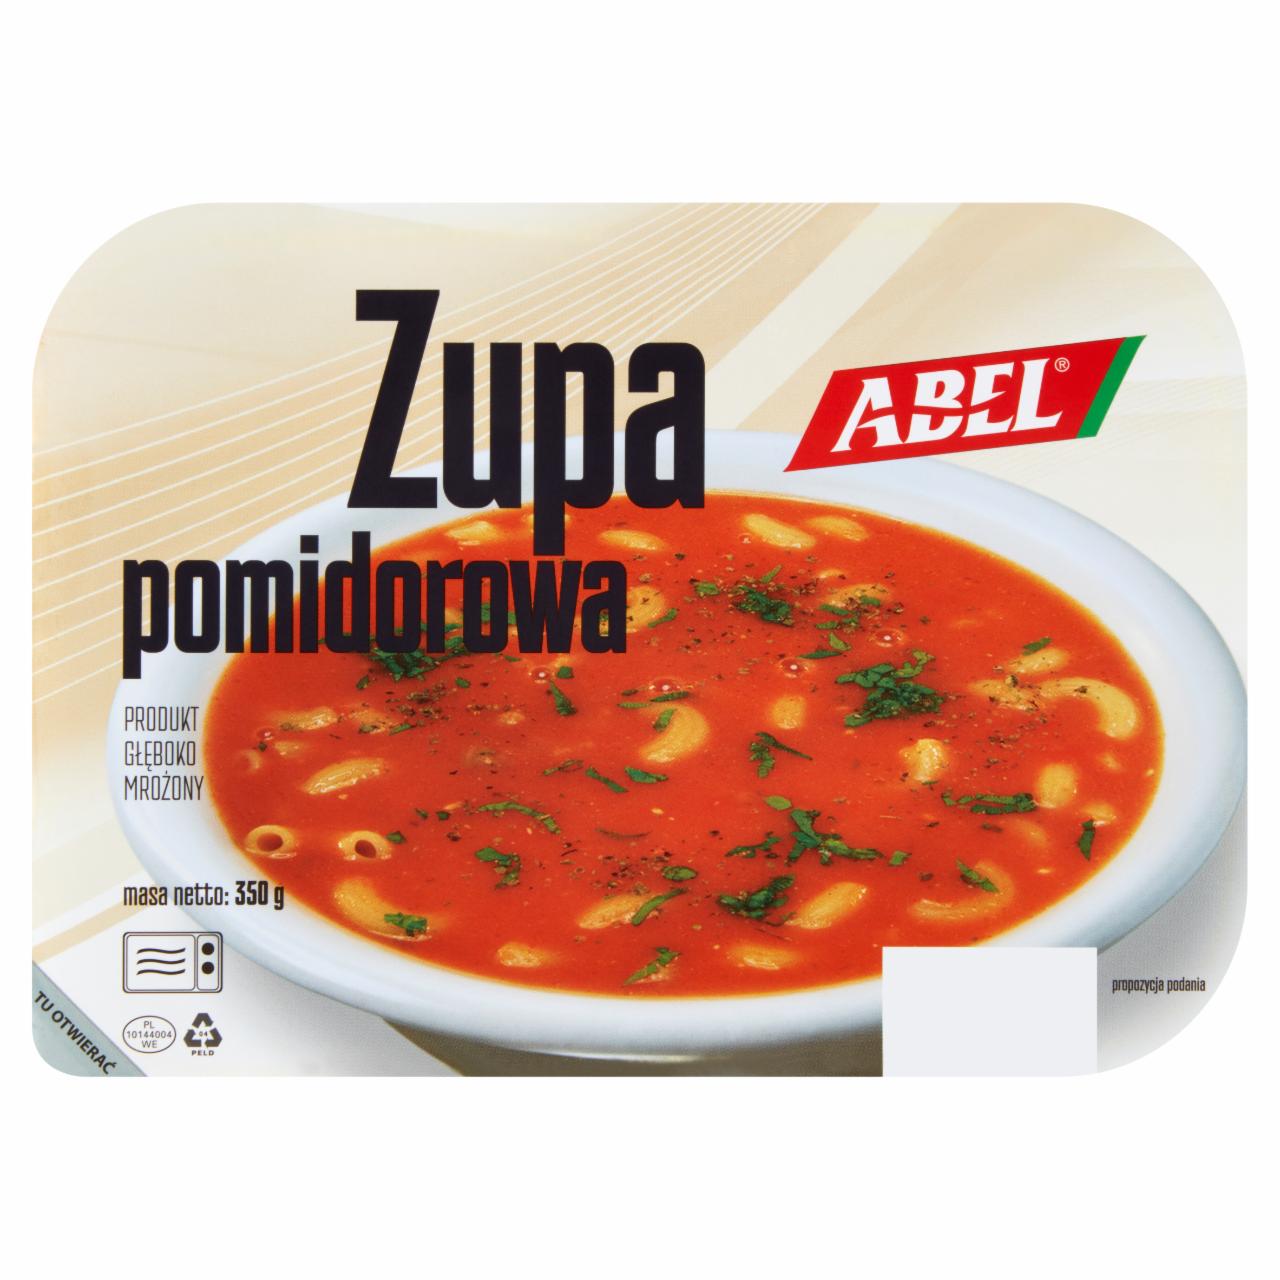 Zdjęcia - Abel Zupa pomidorowa 350 g